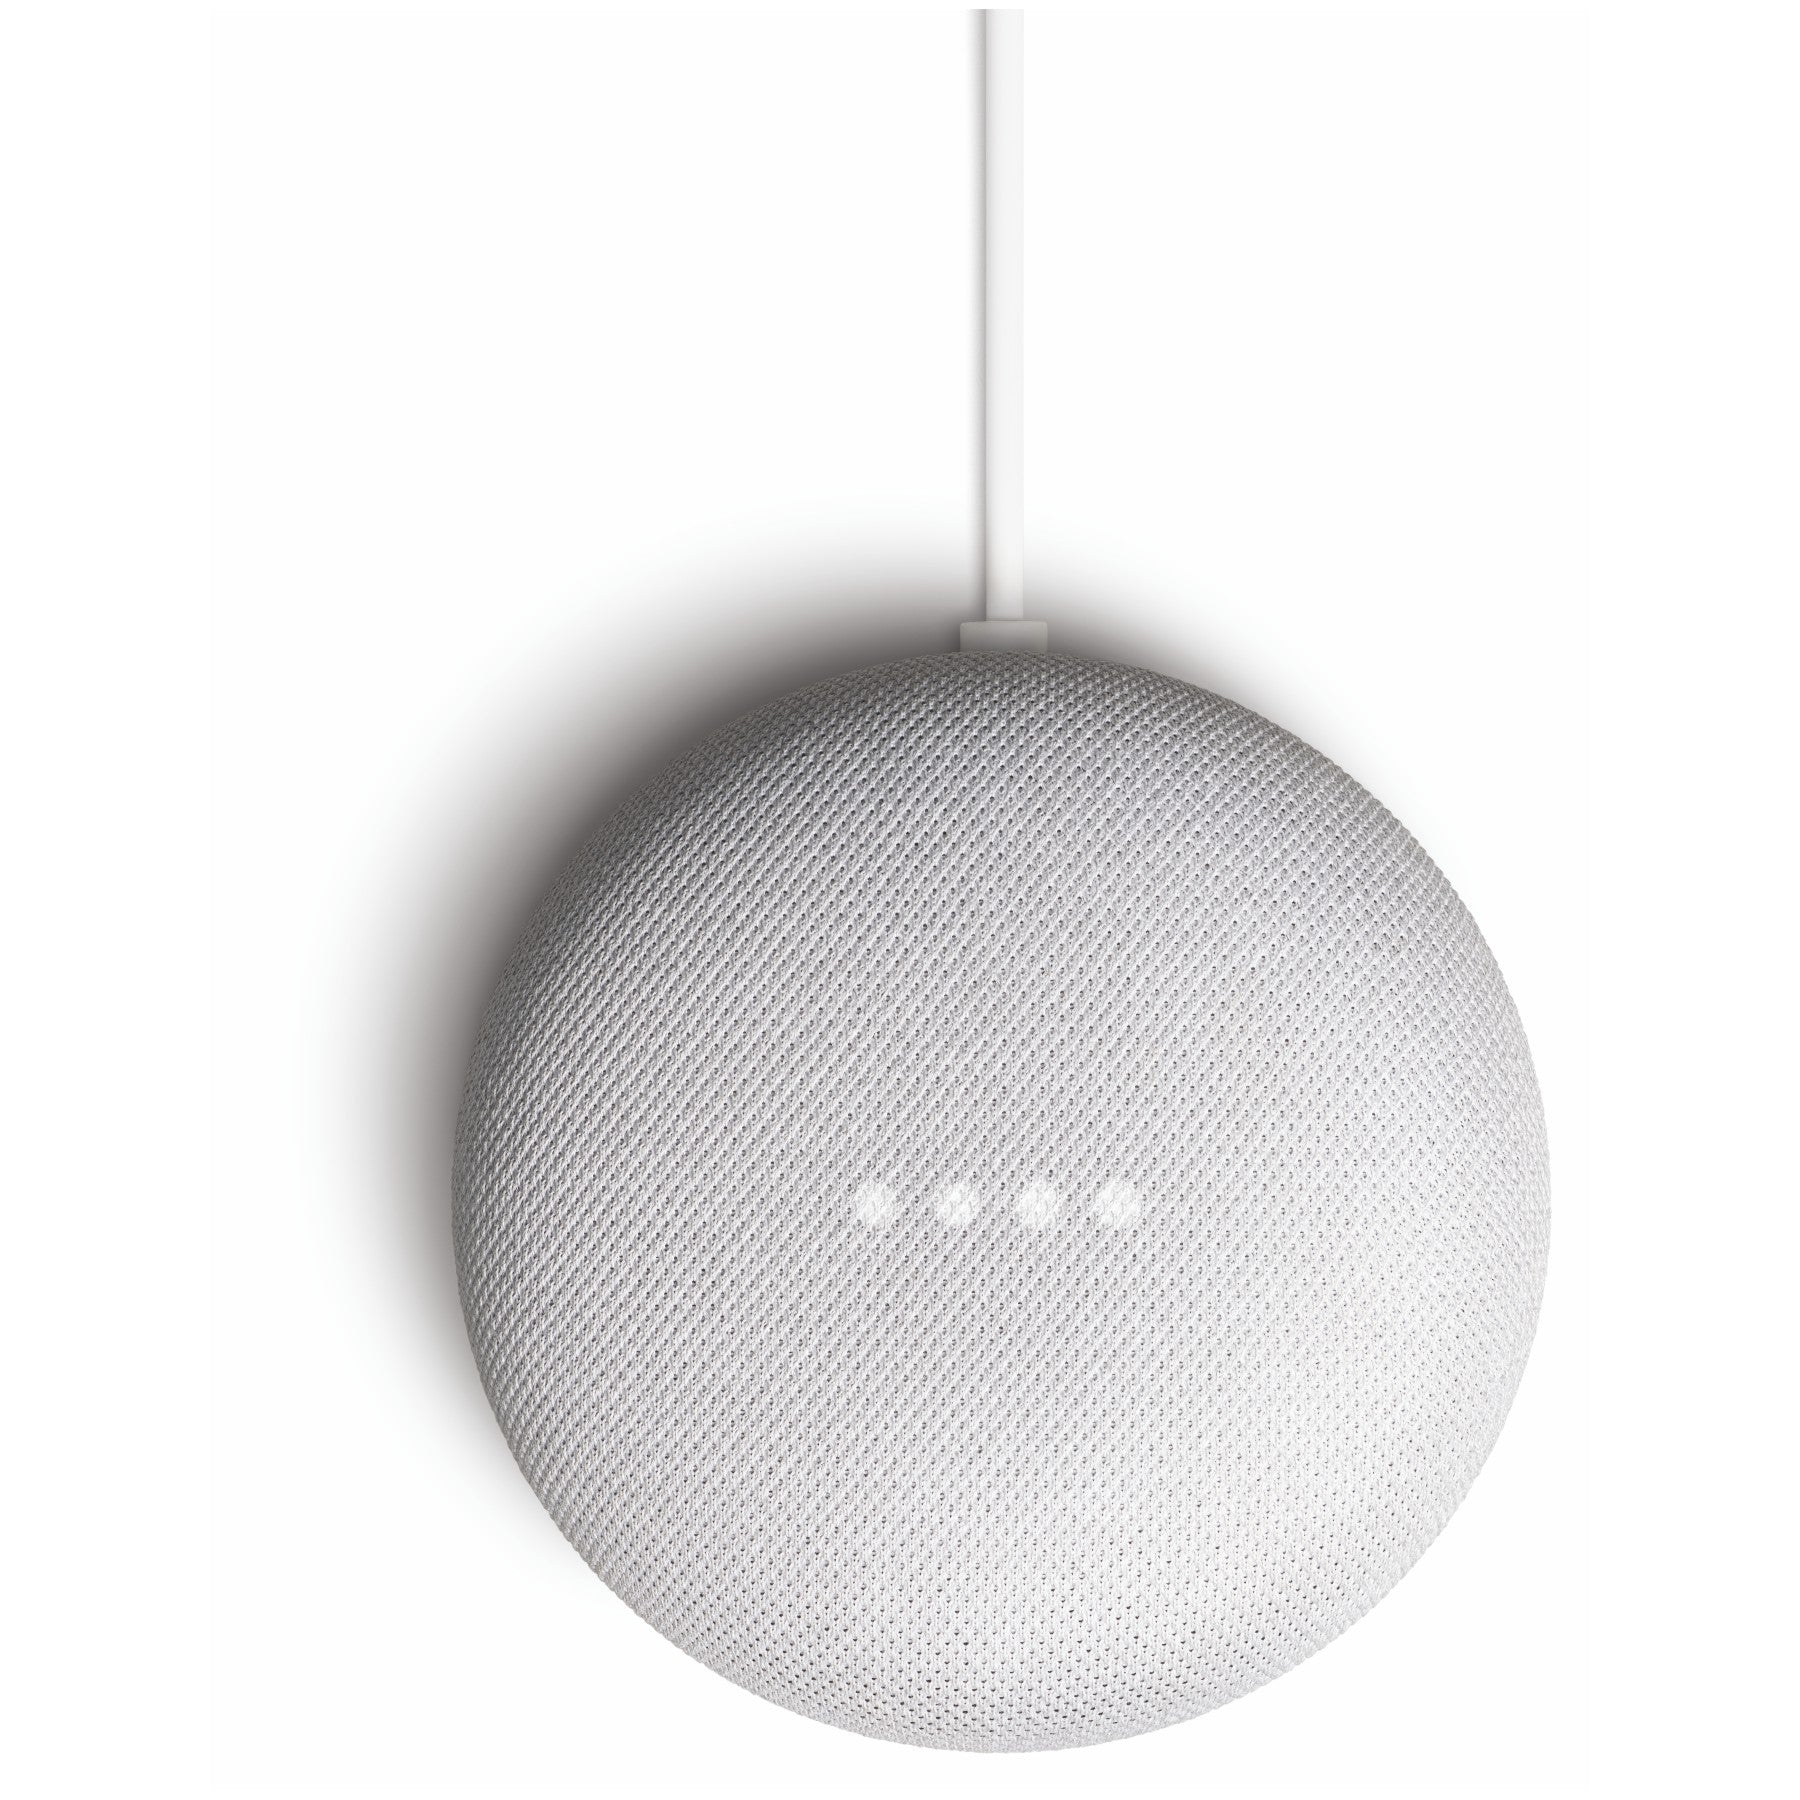 Google Nest Mini speaker